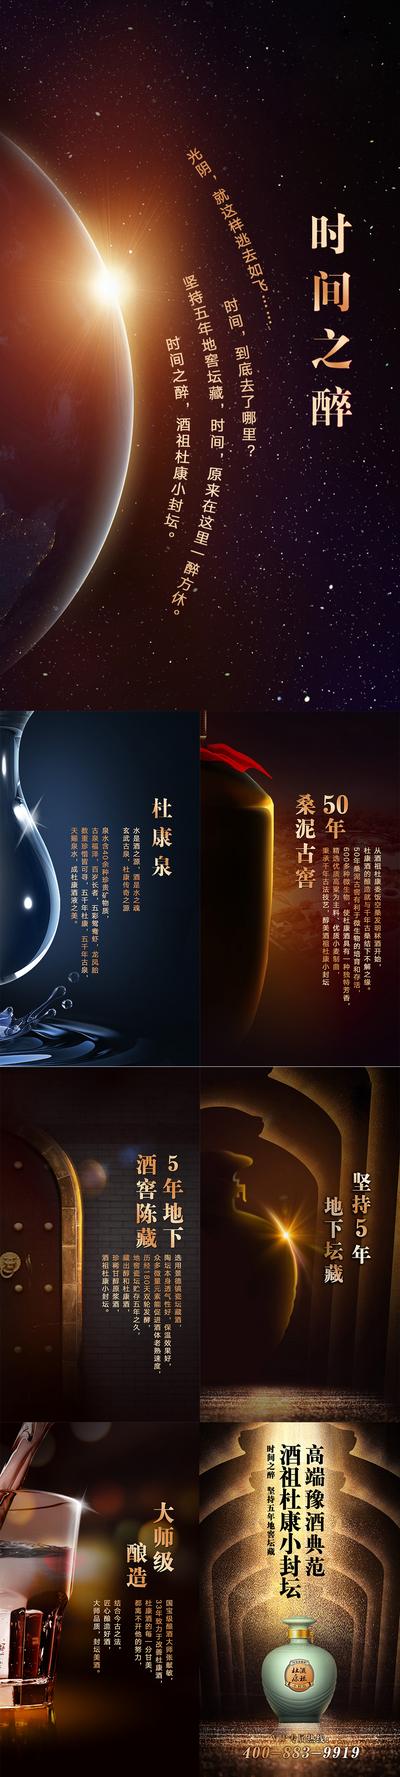 【南门网】专题设计 H5 白酒 促销 宣传 高端 大气 绚丽 宇宙 星空